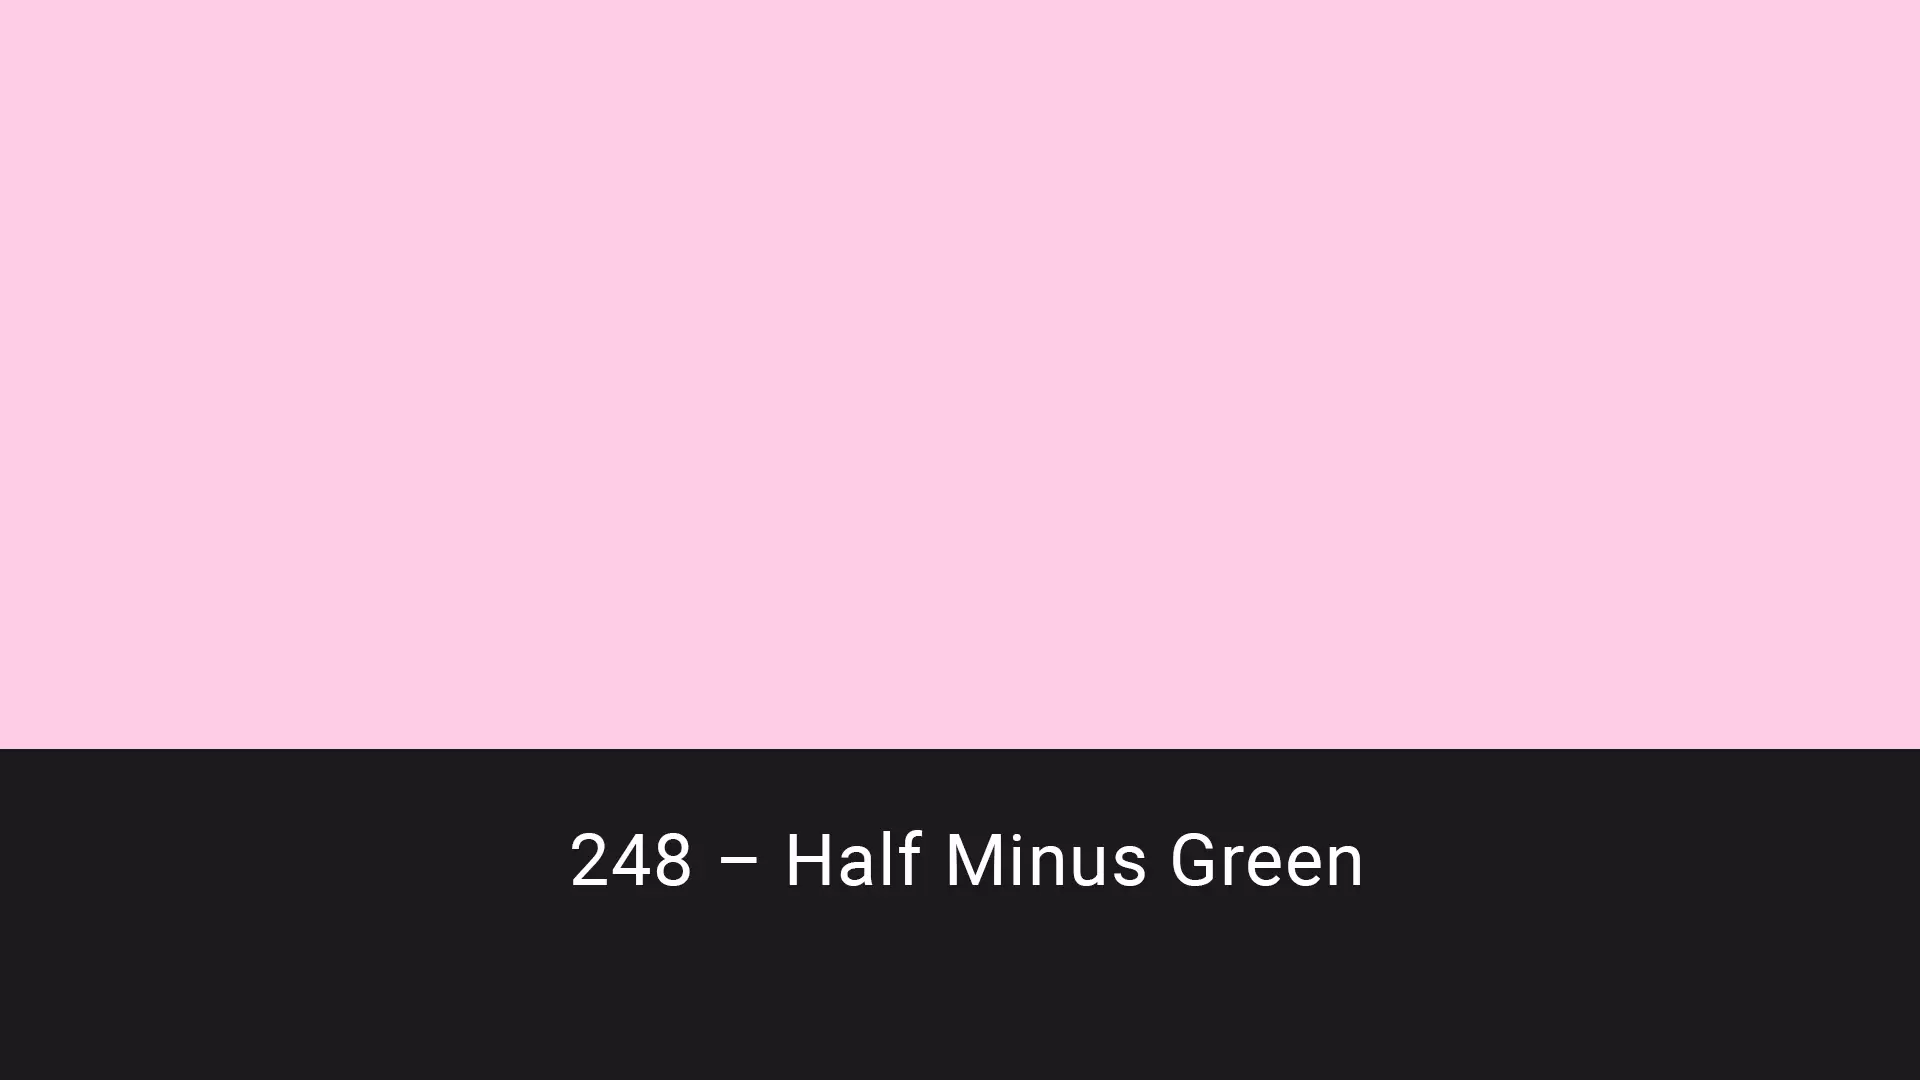 Cotech filters 248 Half Minus Green